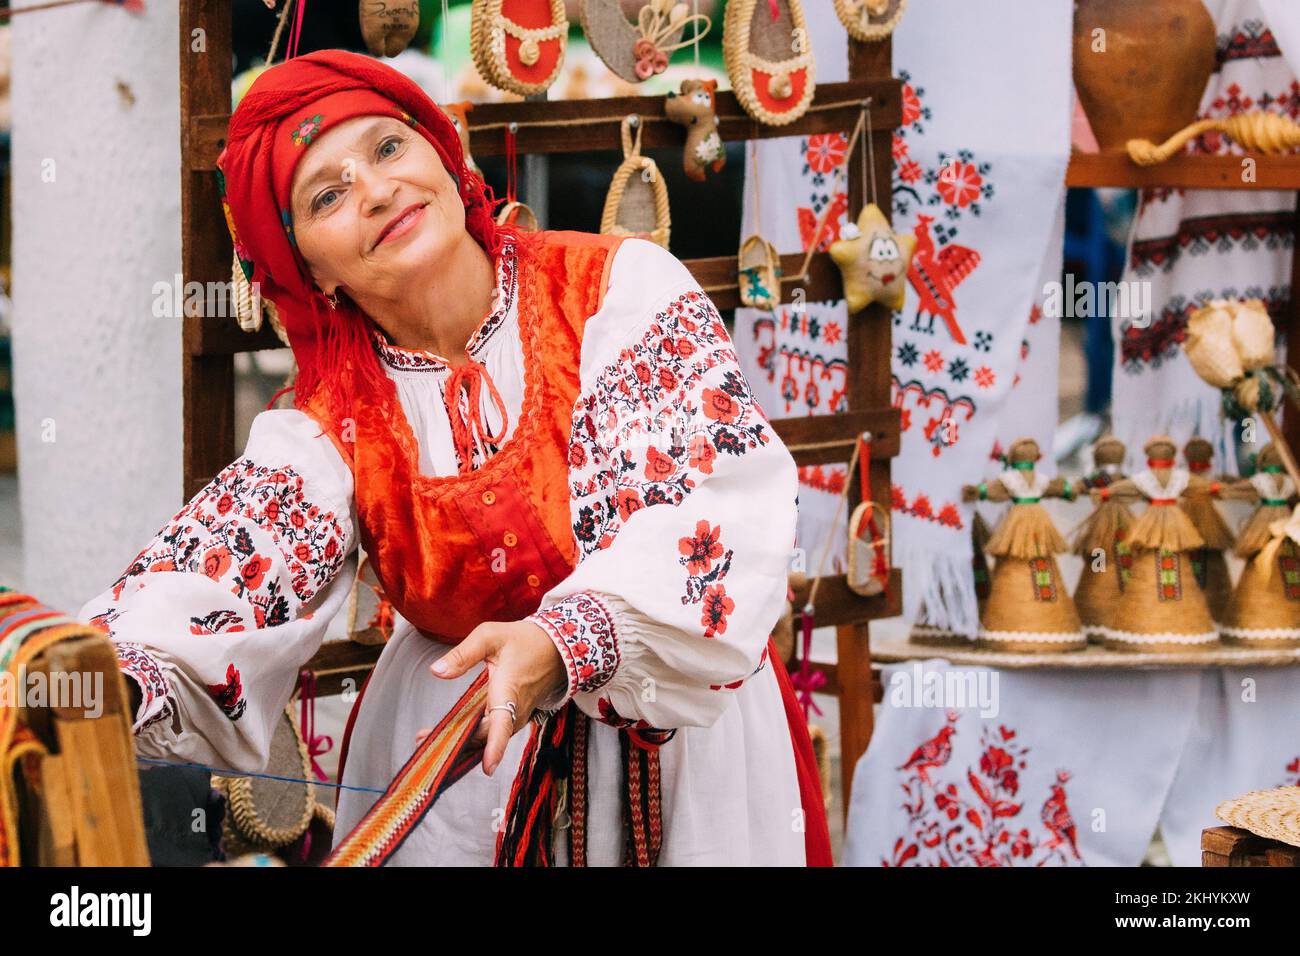 Tejido femenino para adultos sonriente en ropa tradicional bordada bielorrusa muestra el proceso de hilado de cinturón. Festival Folk en Minsk, Bielorrusia. Foto de stock